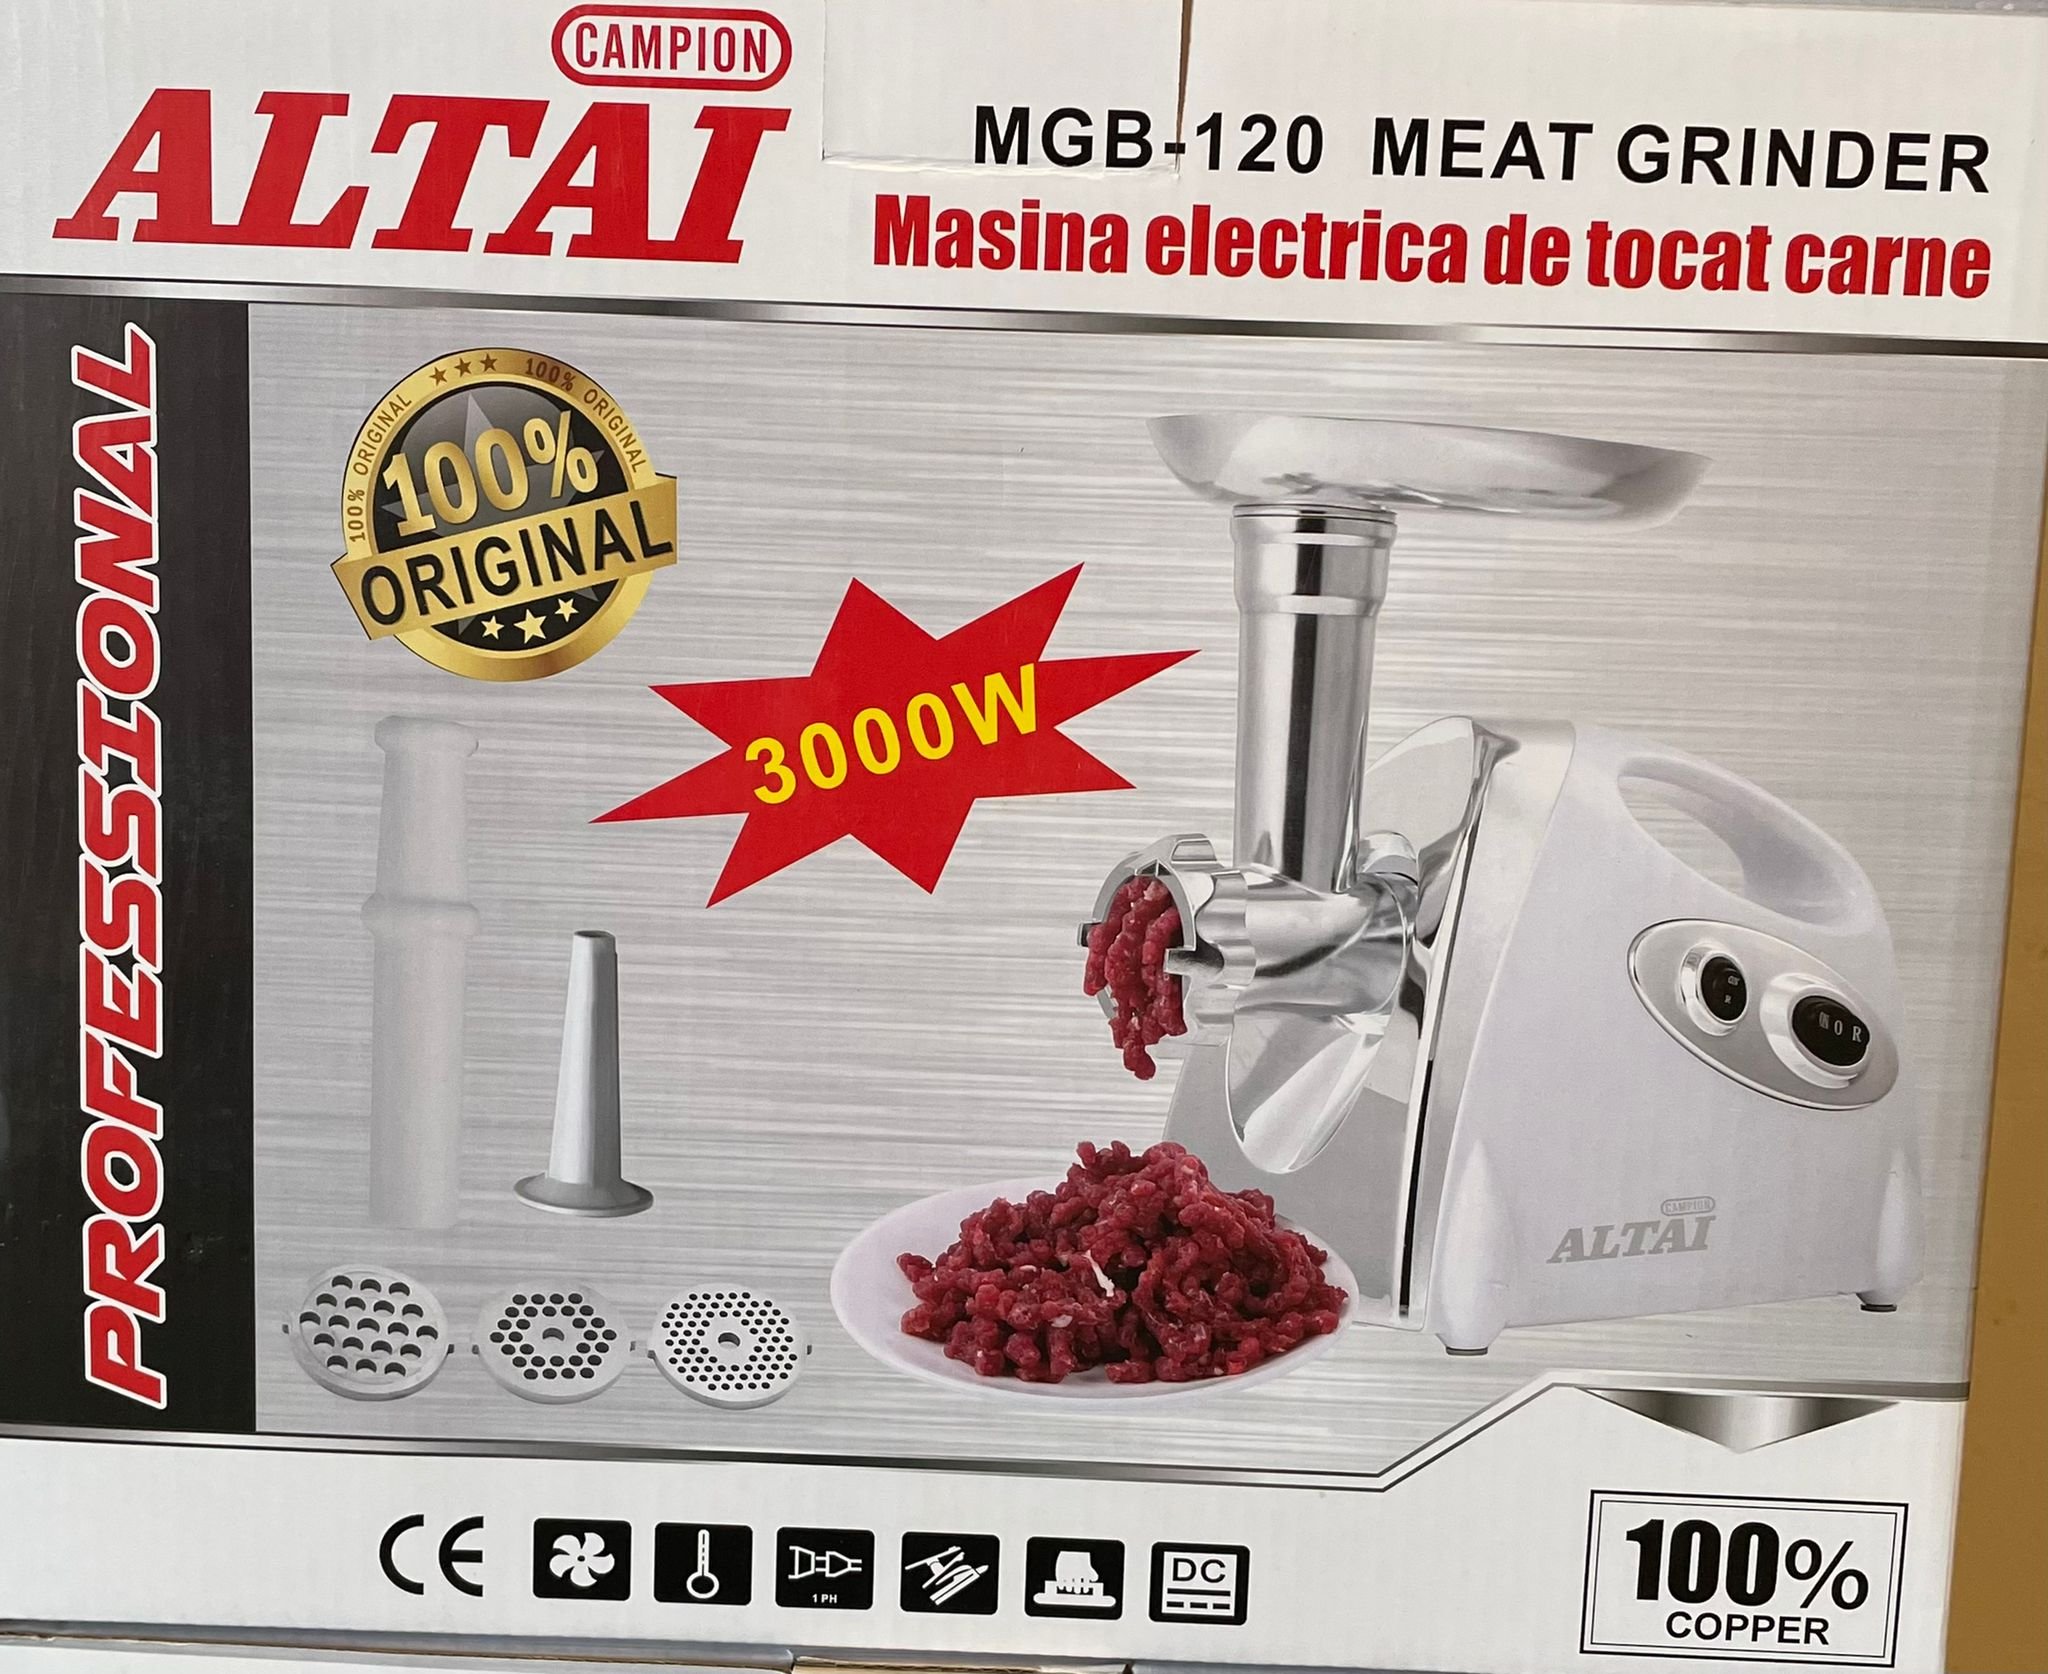 Masina electrica de tocat carne 3000W alba MGB ALTAI